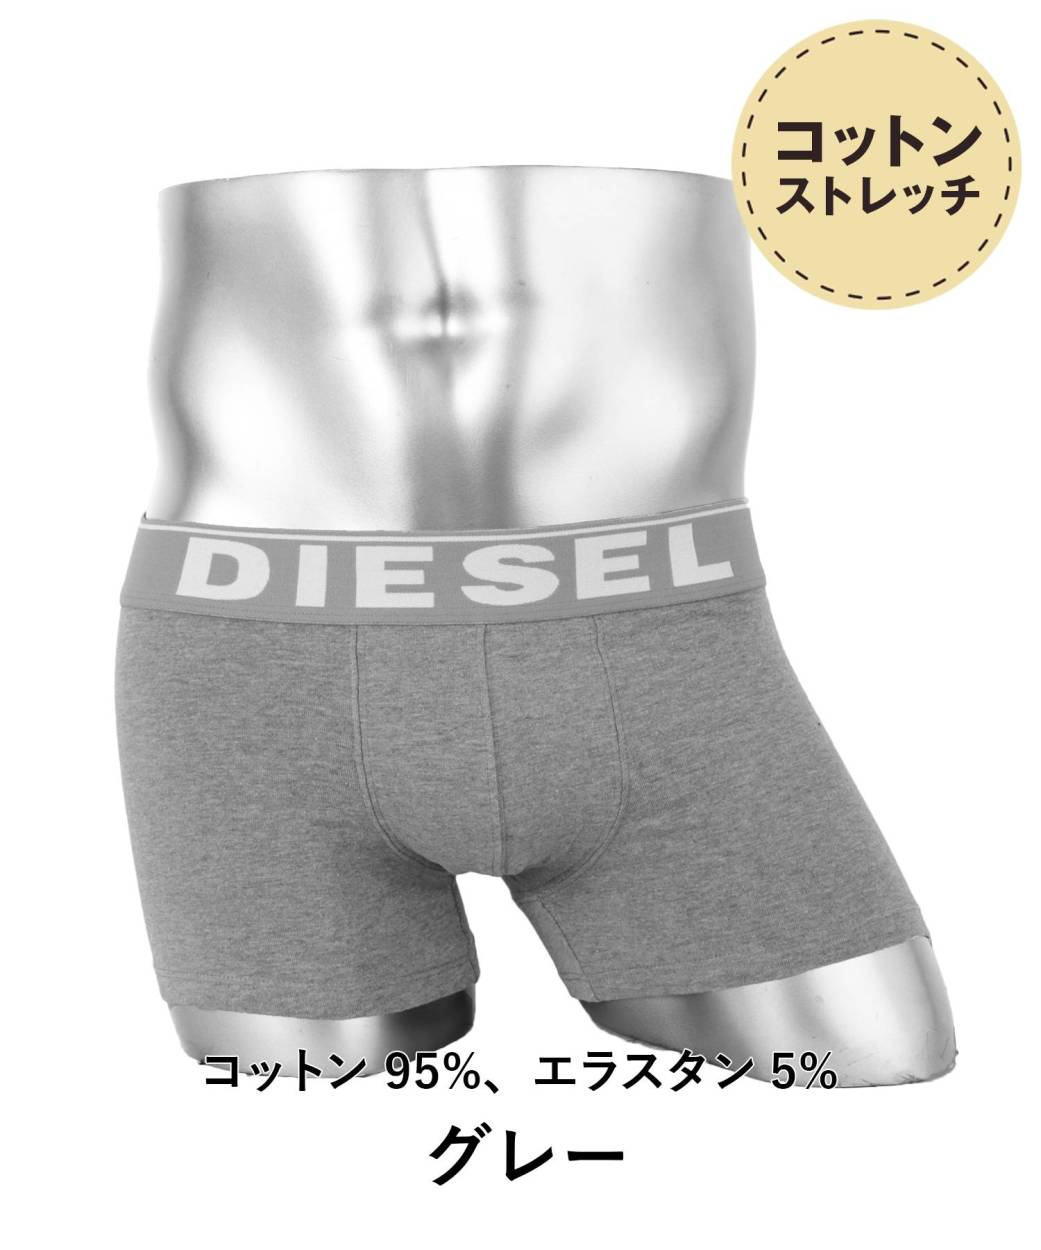 ディーゼル DIESEL ボクサーパンツ メンズ 男性 下着 かっこいい シンプル スポーティ ブランド 人気 アンダーウェア パンツ